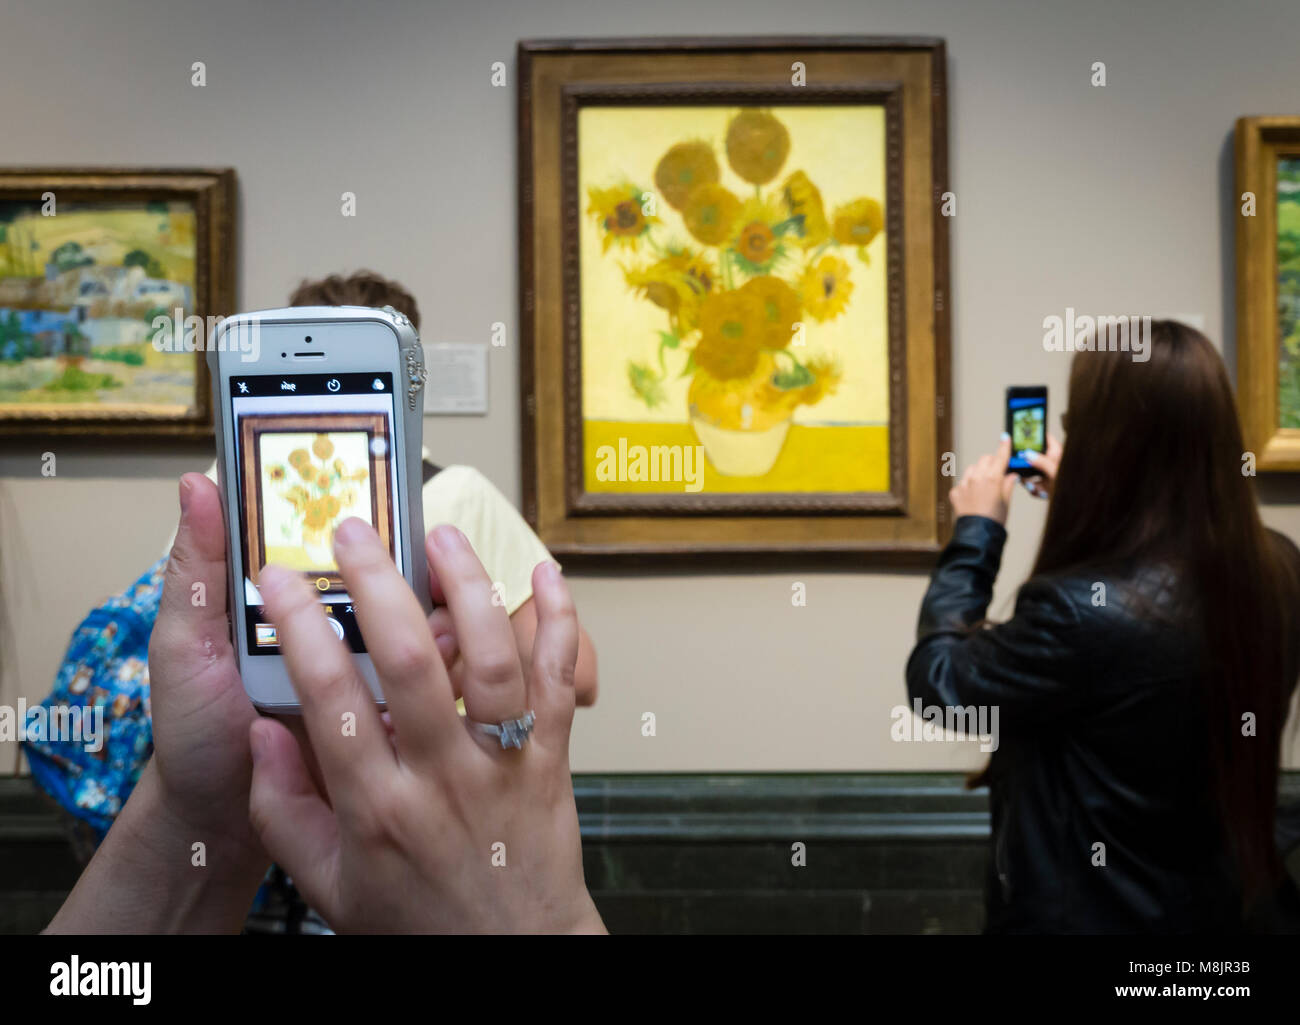 Londres, UK - 1 Sep 2017 : les visiteurs de la National Gallery de Londres sont à l'aide de leur smartphone pour prendre des photos de Vincent van Gogh peinture à l'huile "unflowers', l'une des plus célèbres pièces du musée. Banque D'Images